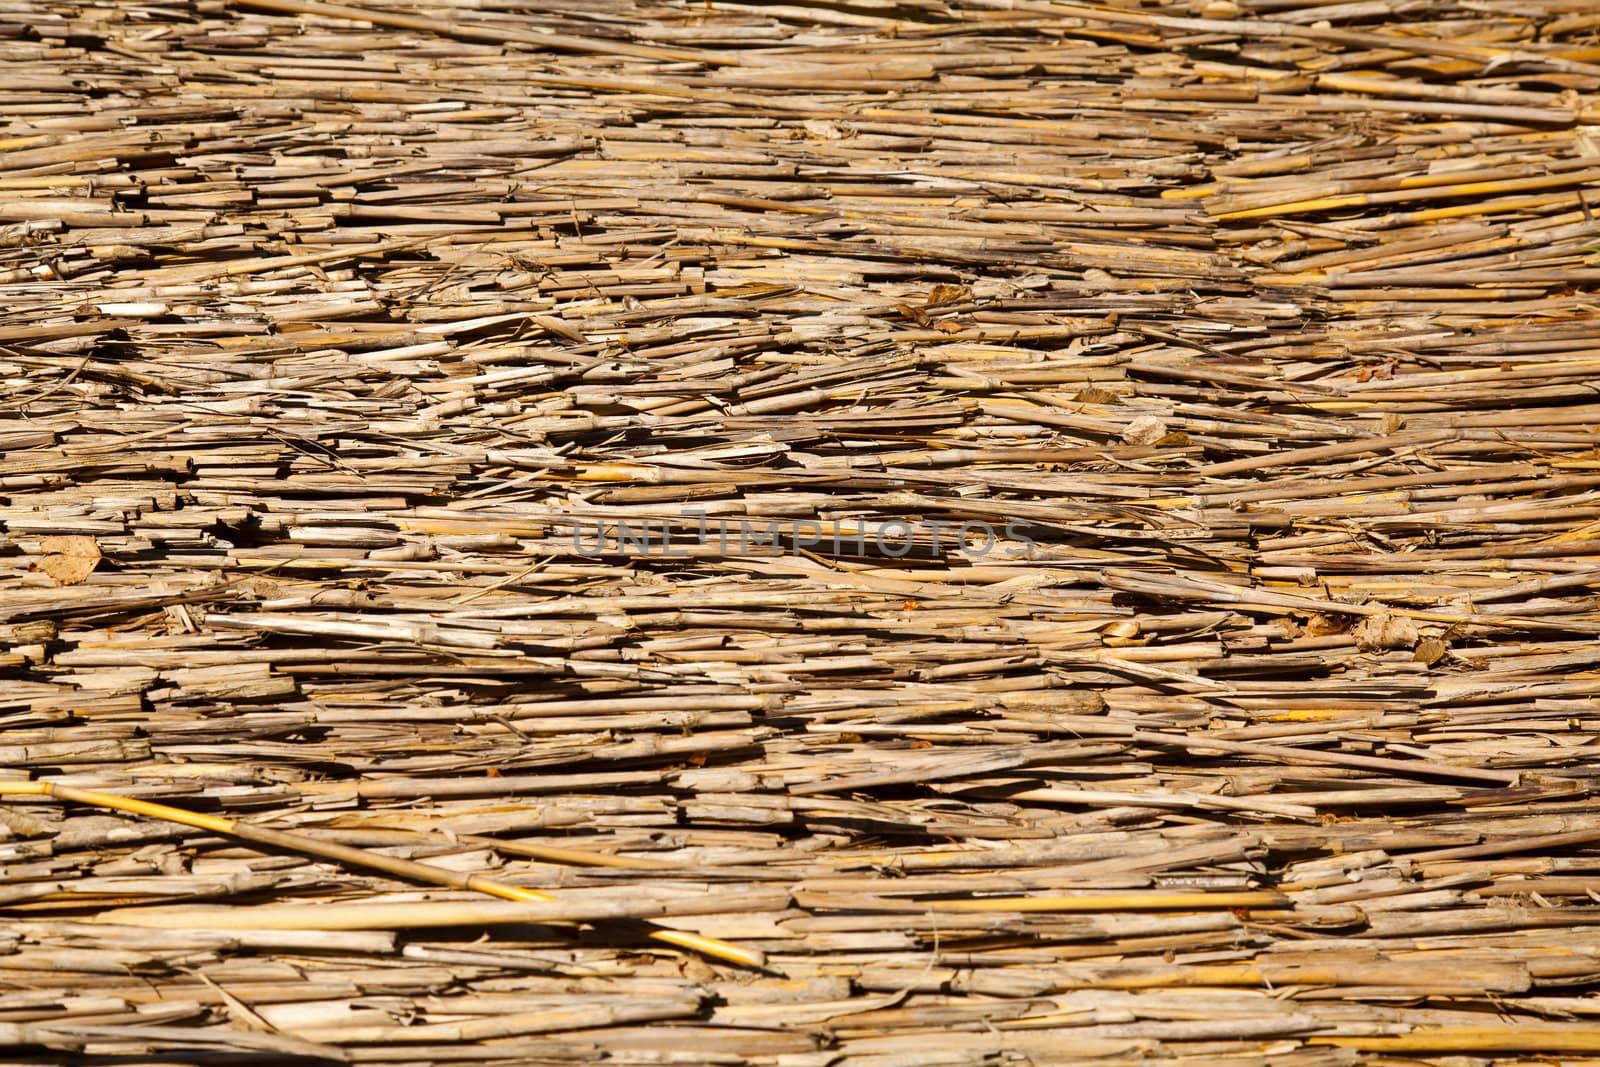 Dried straw horizontal background